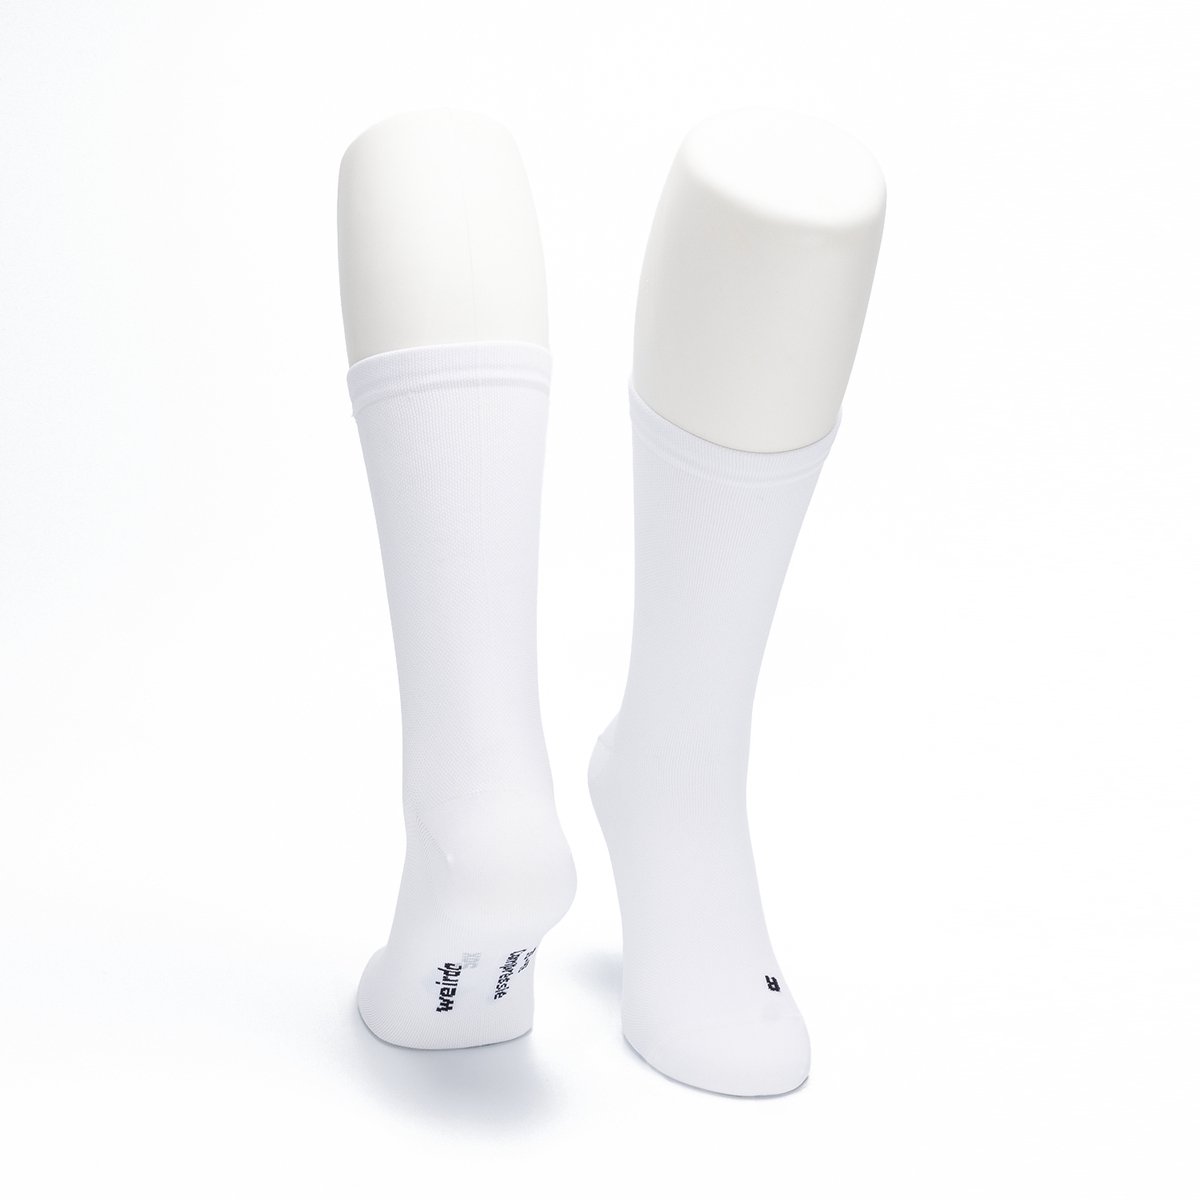 WeirdoSox - Compressie sokken - 22cm Hoog - Steunkousen voor vrouwen en mannen - 1 paar - Wit 39/42 - Ideaal als compressiekousen hardlopen - compressiekousen vliegtuig